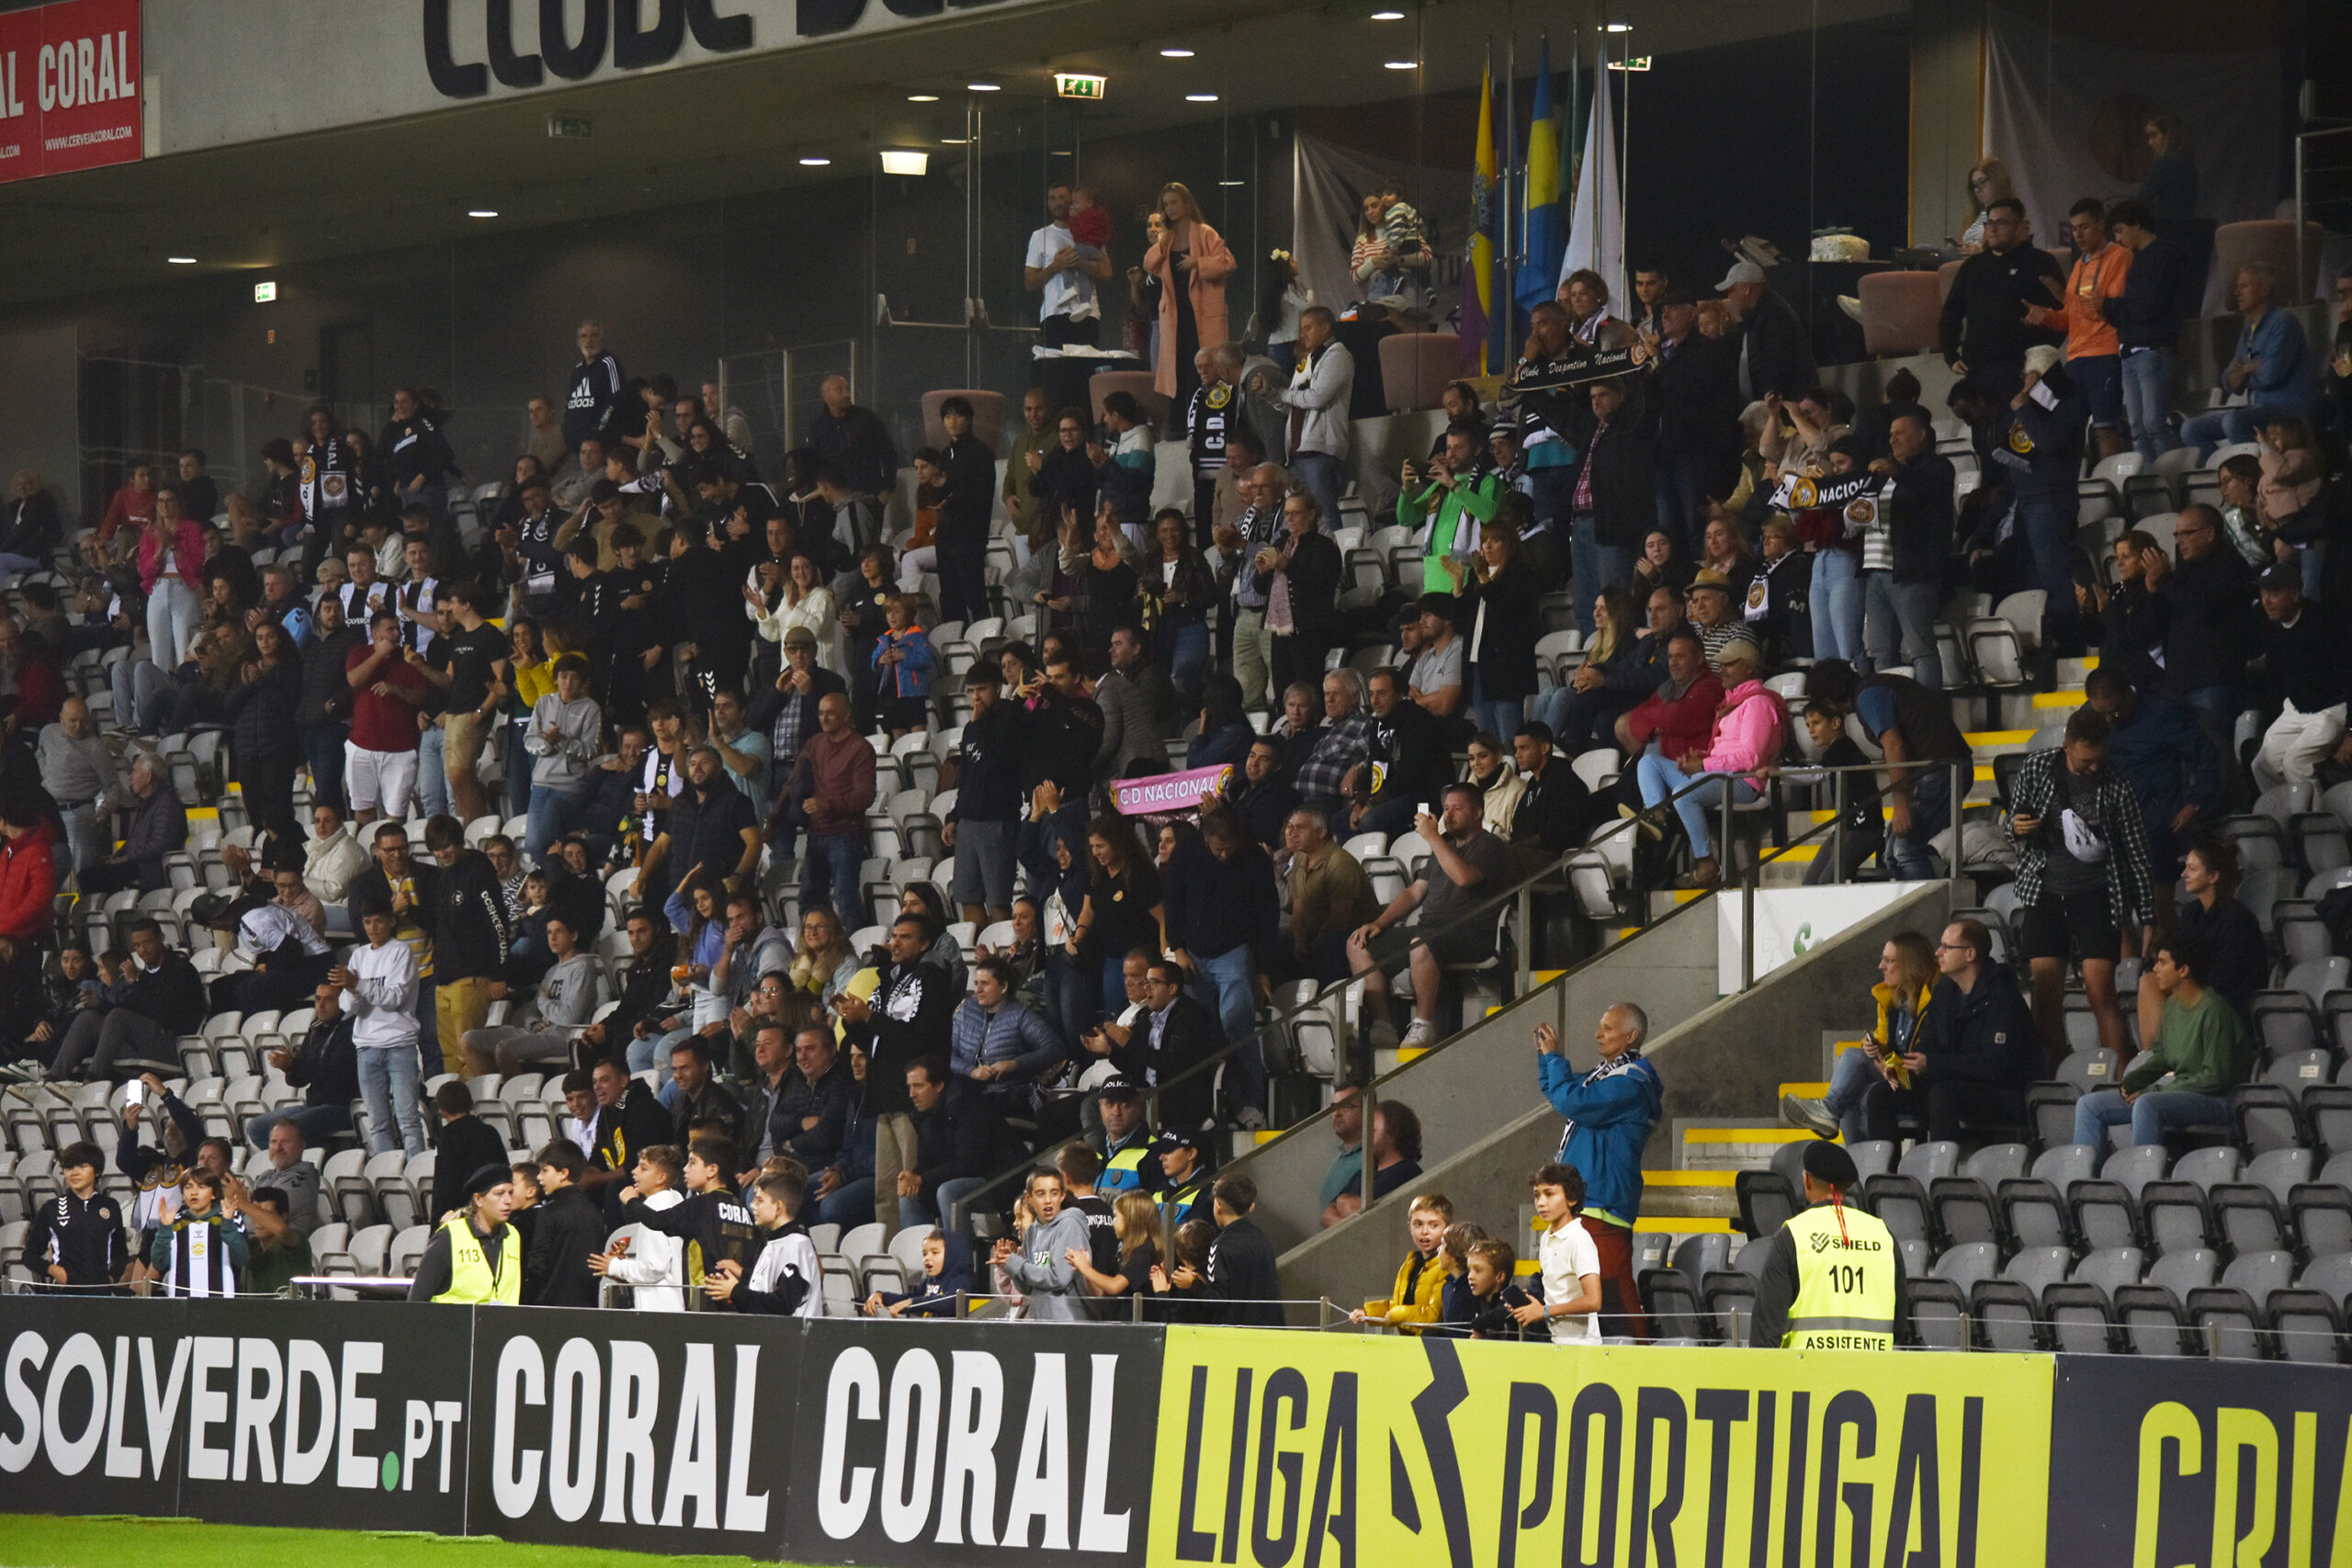 II Liga: Mafra arranca um ponto no último minuto na Choupana - CNN Portugal